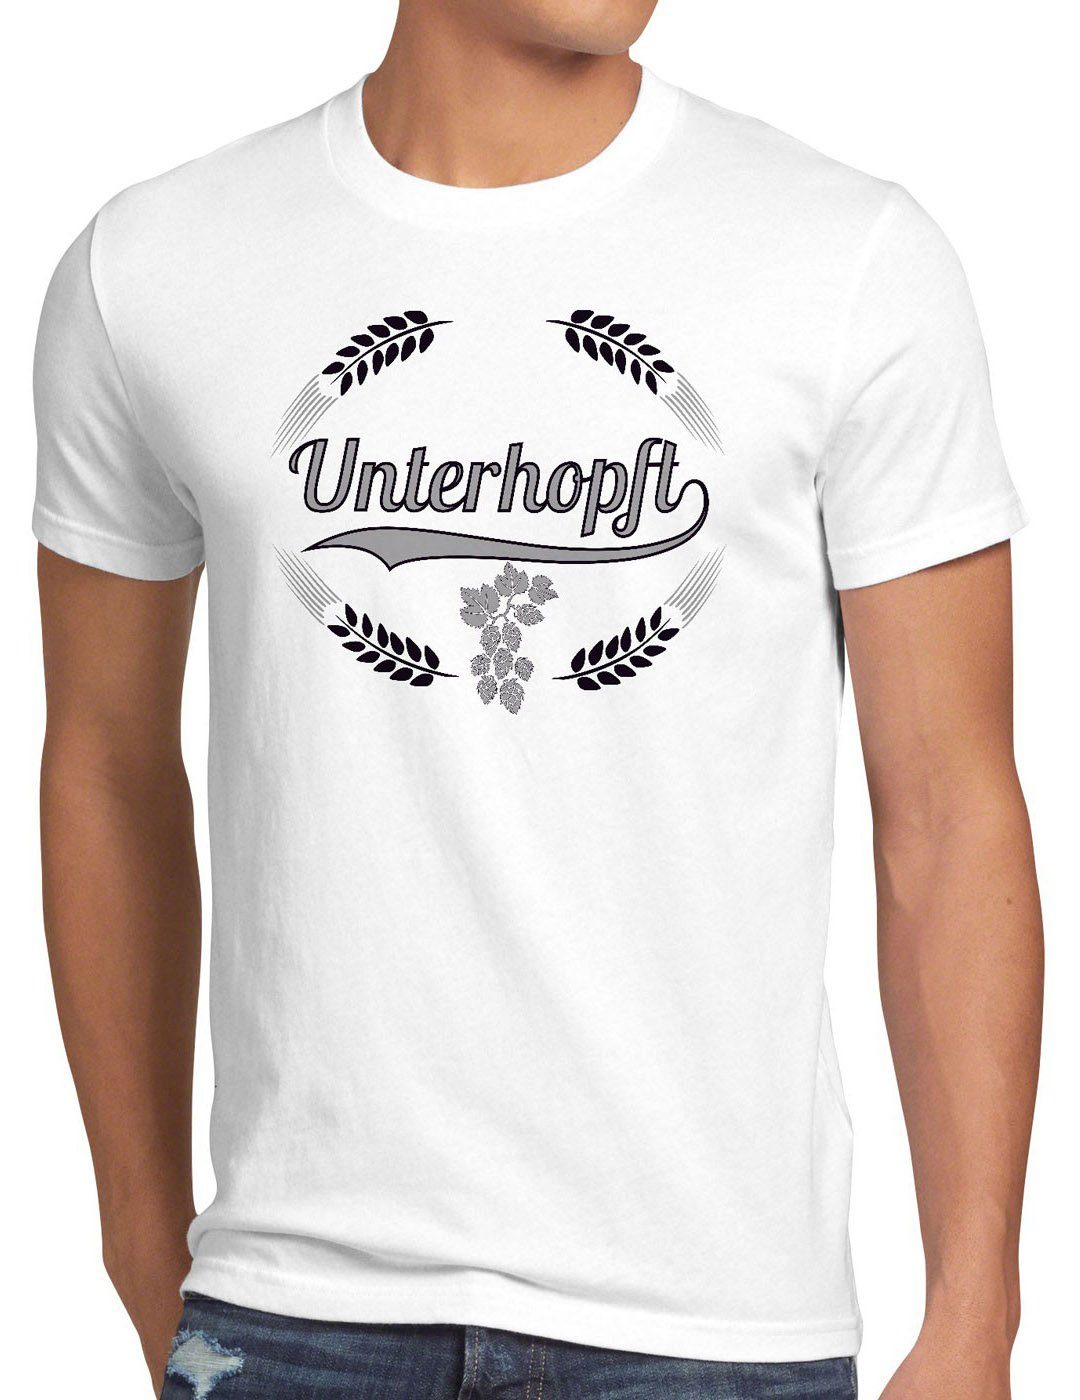 style3 Print-Shirt Herren T-Shirt Unterhopft Kult Shirt Funshirt Bier Hopfen Spruch Fun Malz Fest weiß